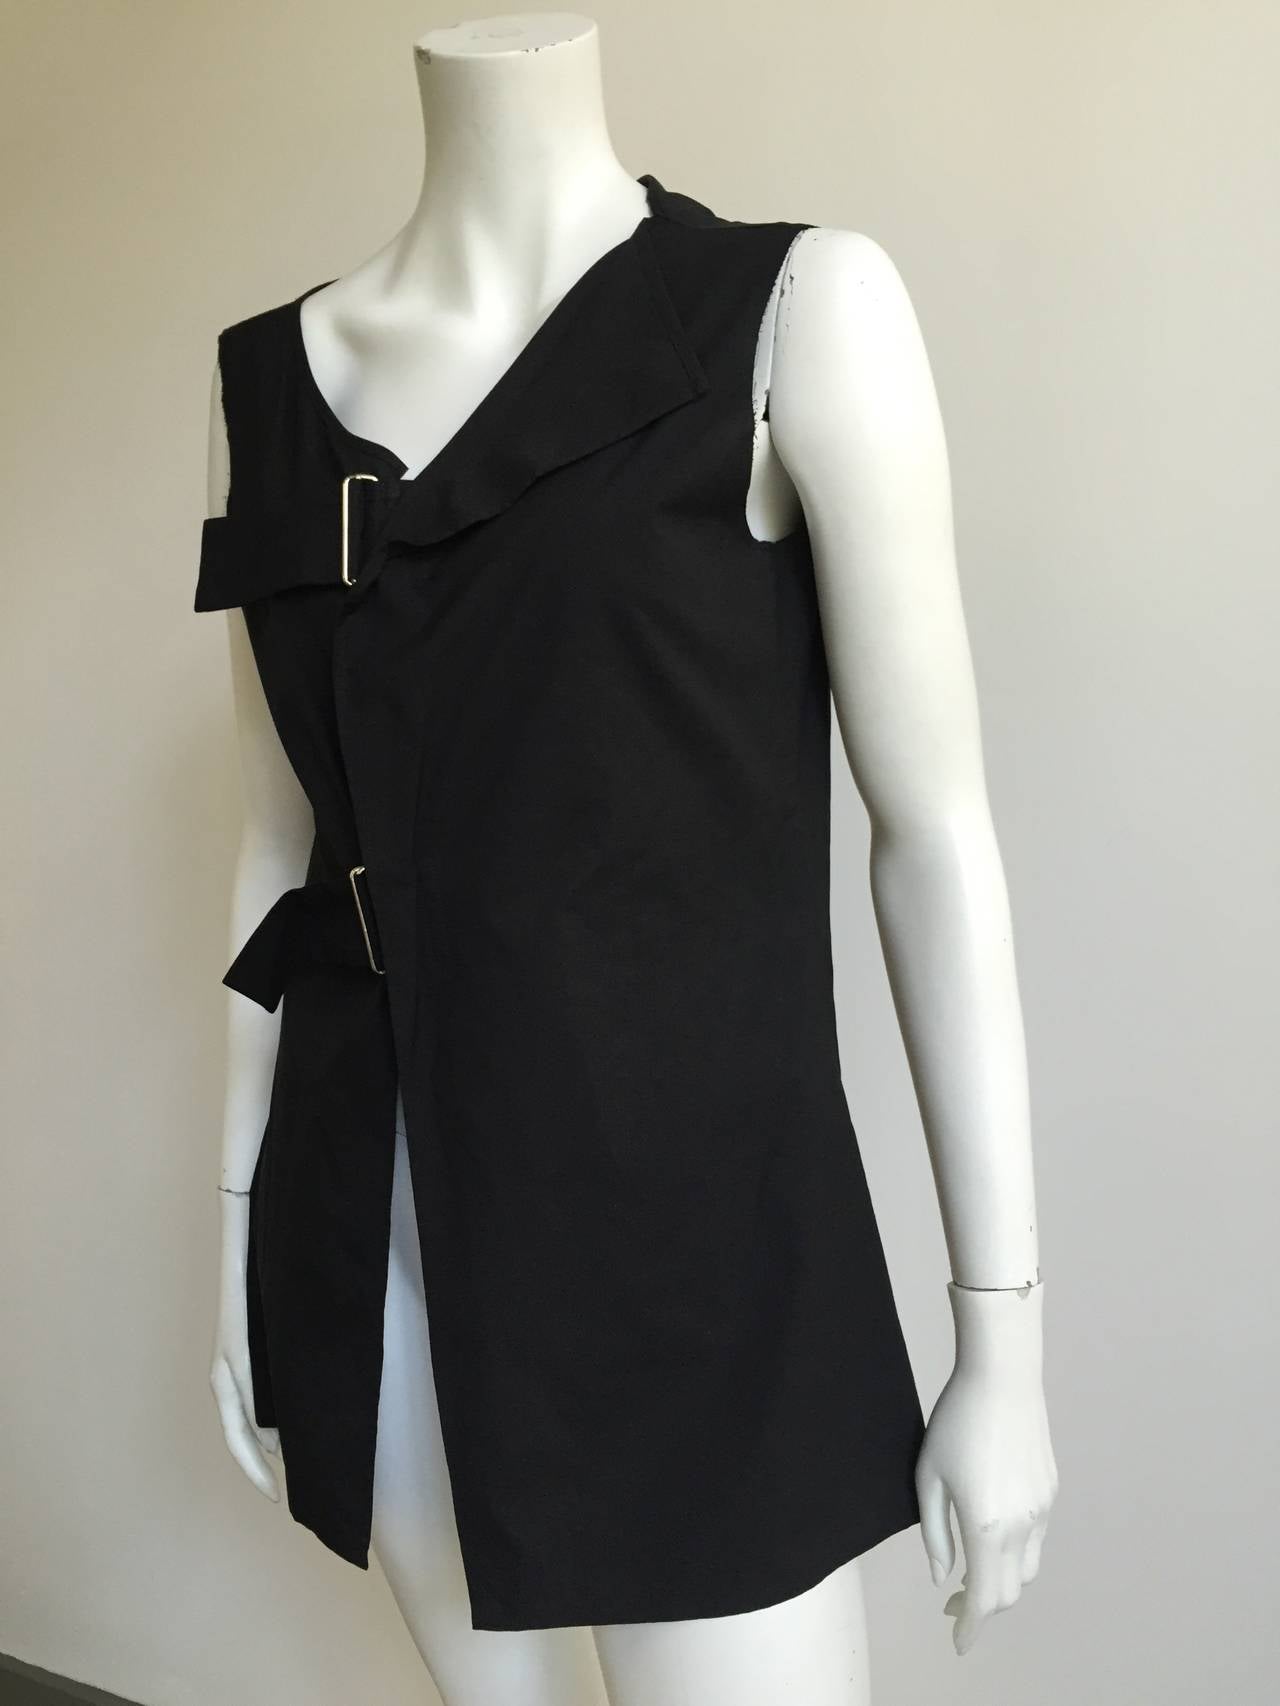 Black Yohji Yamamoto cotton tunic size 2 / 4.